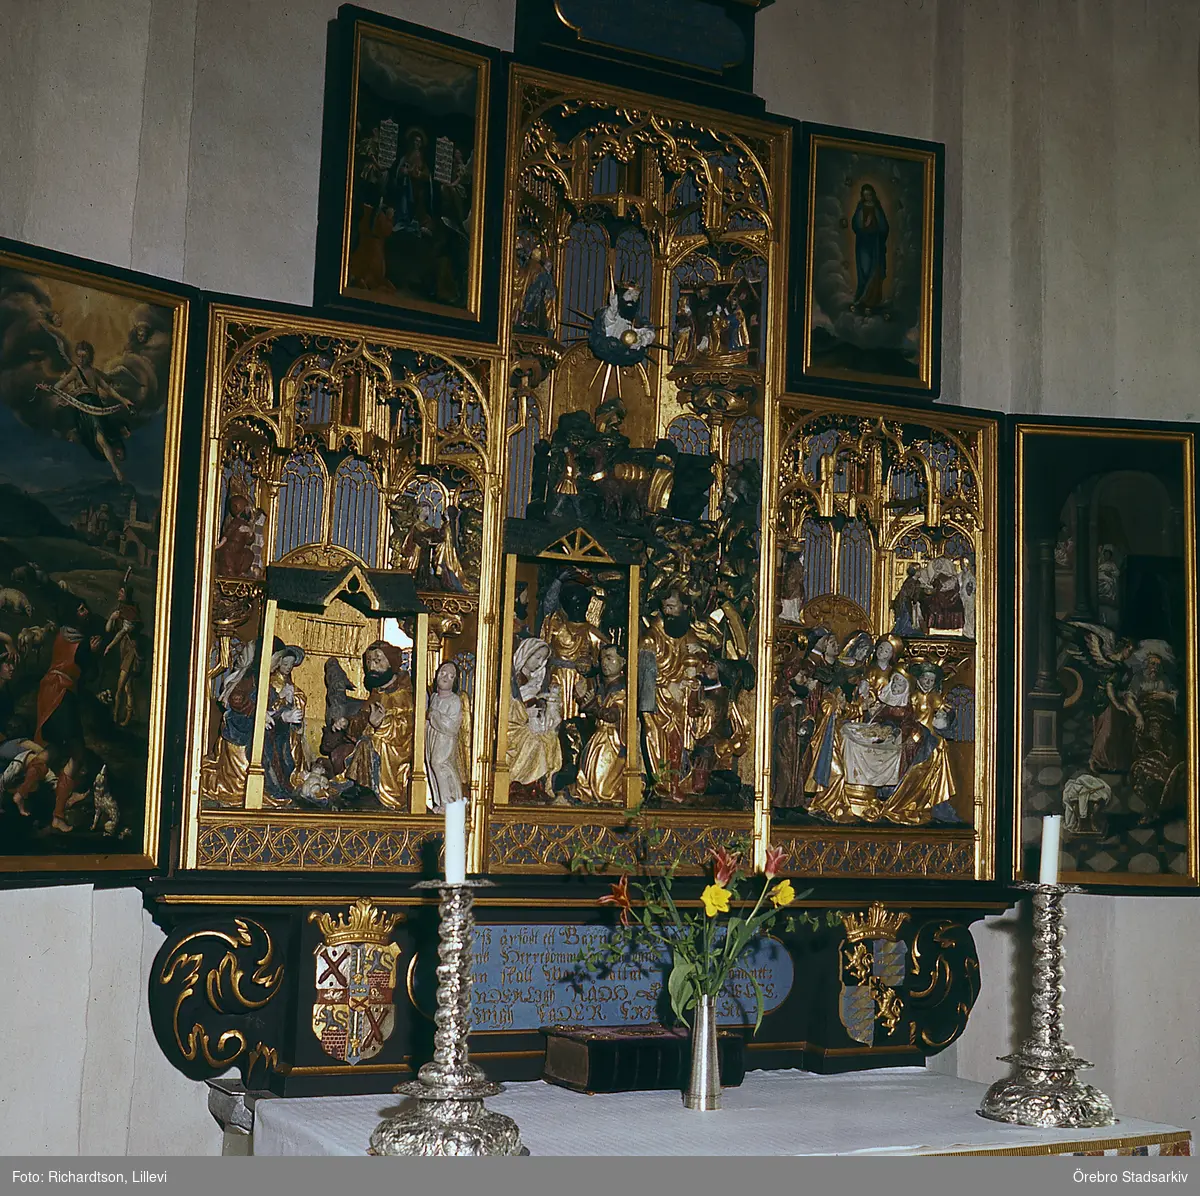 Interiör från Ödeby kyrka